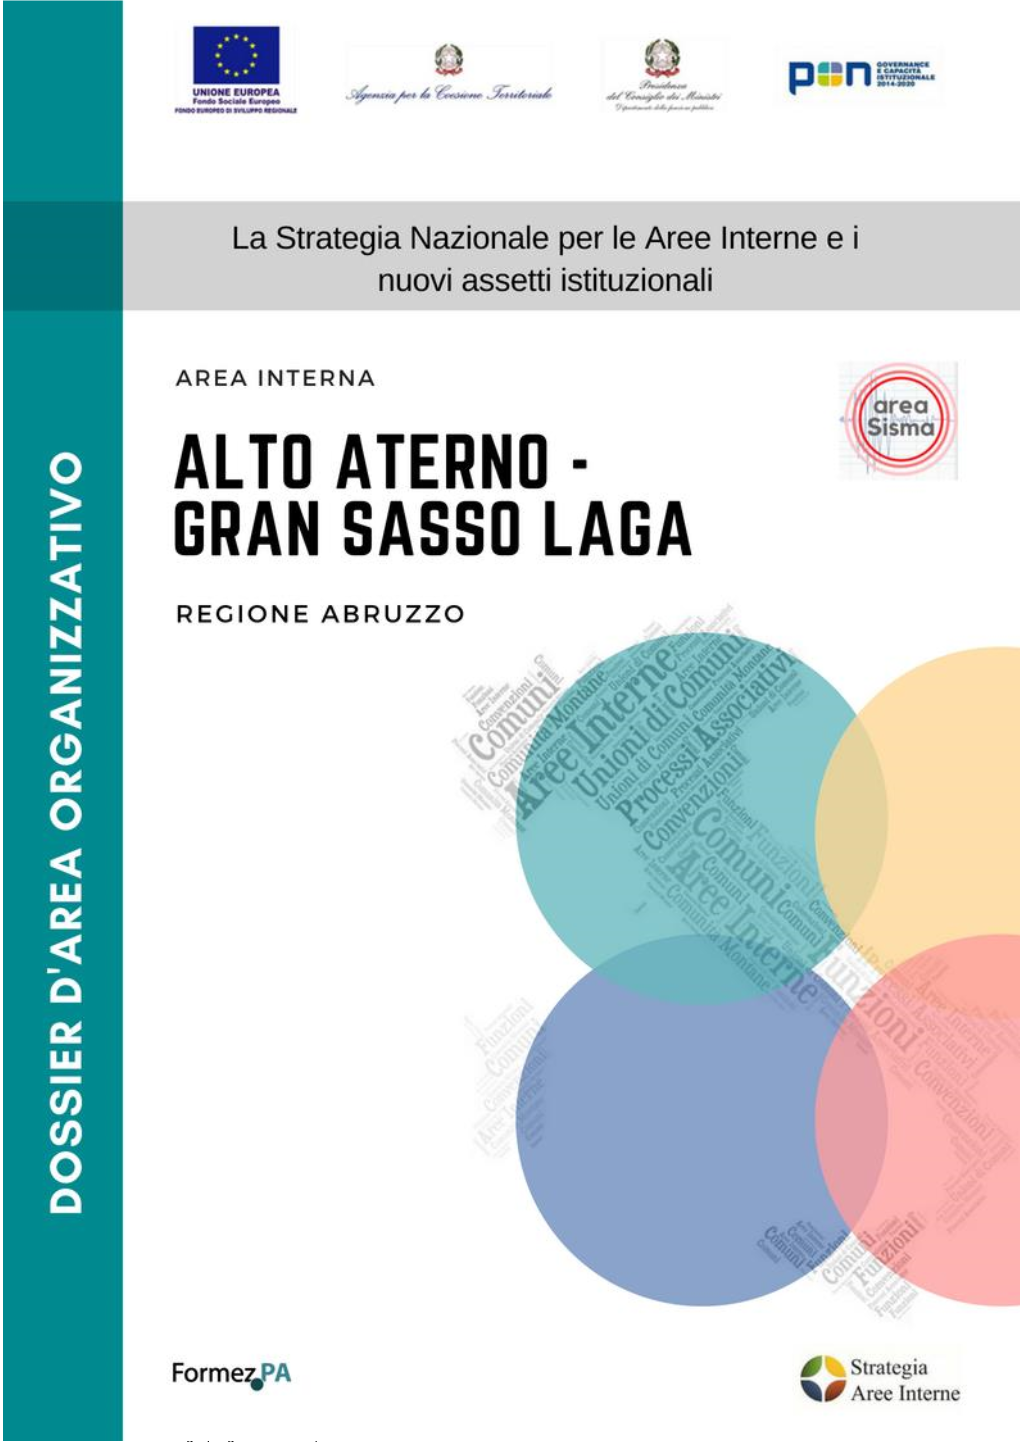 Alto Aterno - Gran Sasso Laga (Regione Abruzzo)